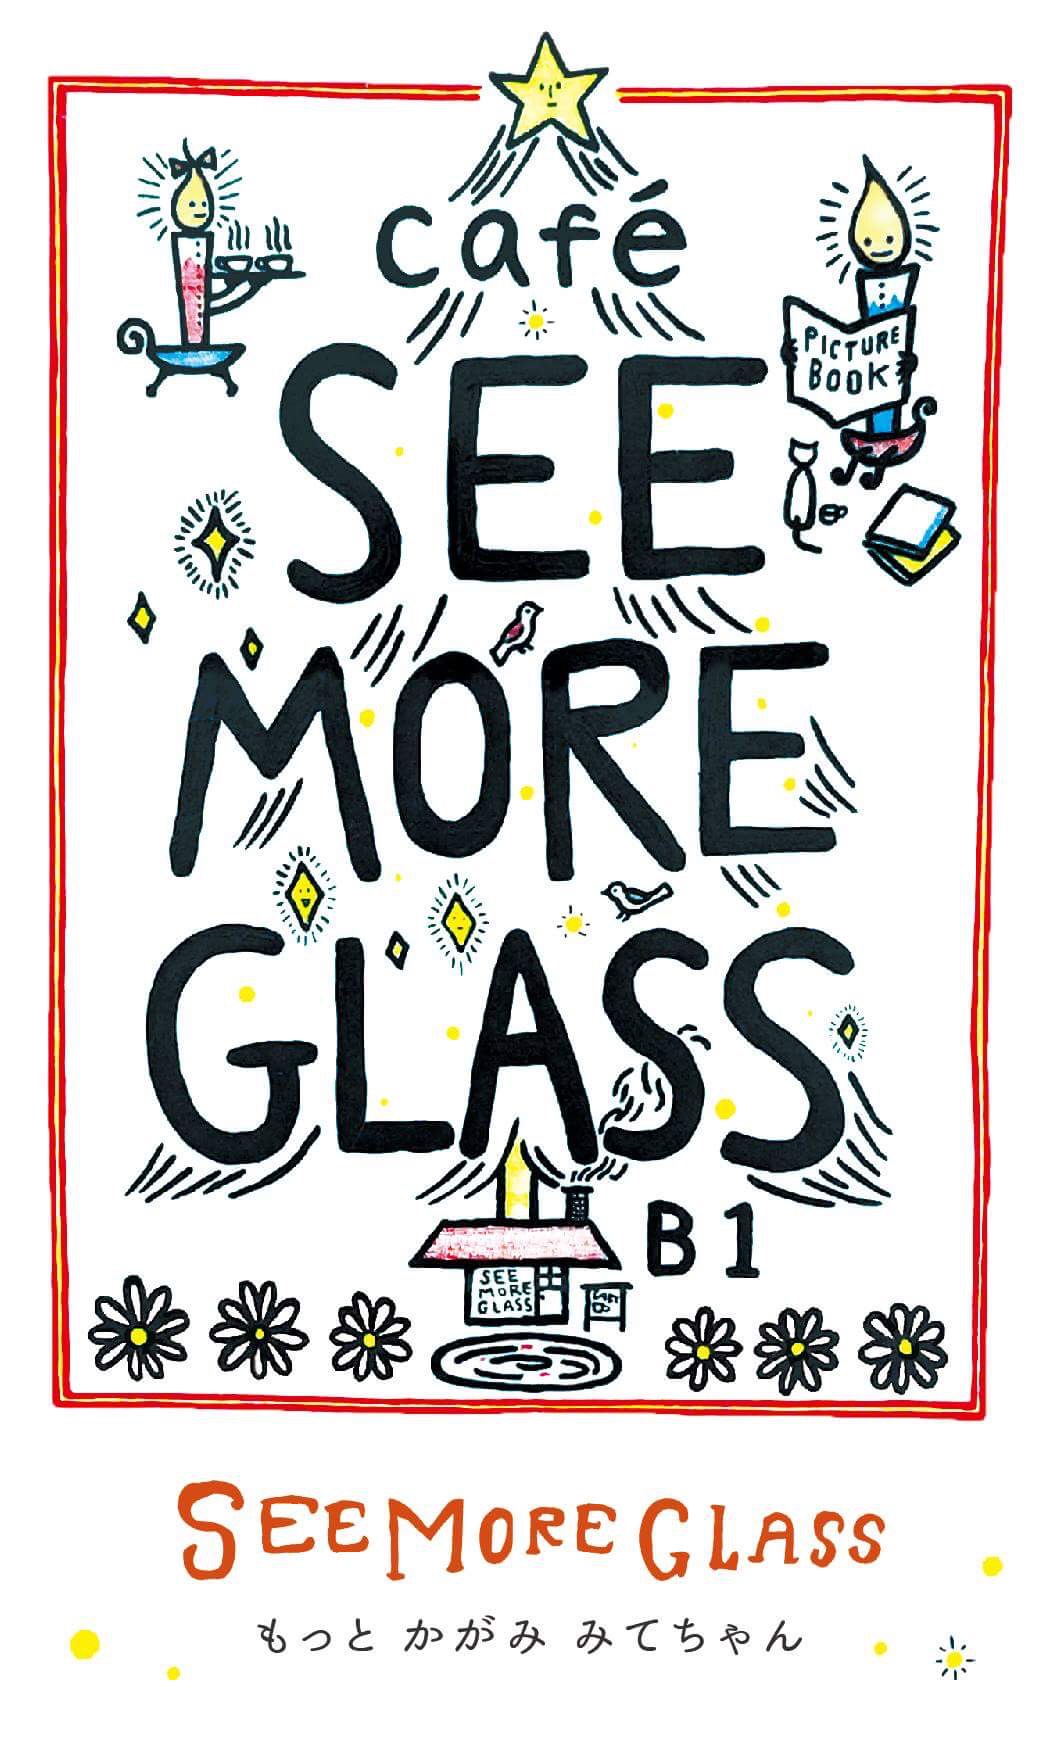 「See More Glass もっと かがみ みてちゃん」_c0192615_18164941.jpg